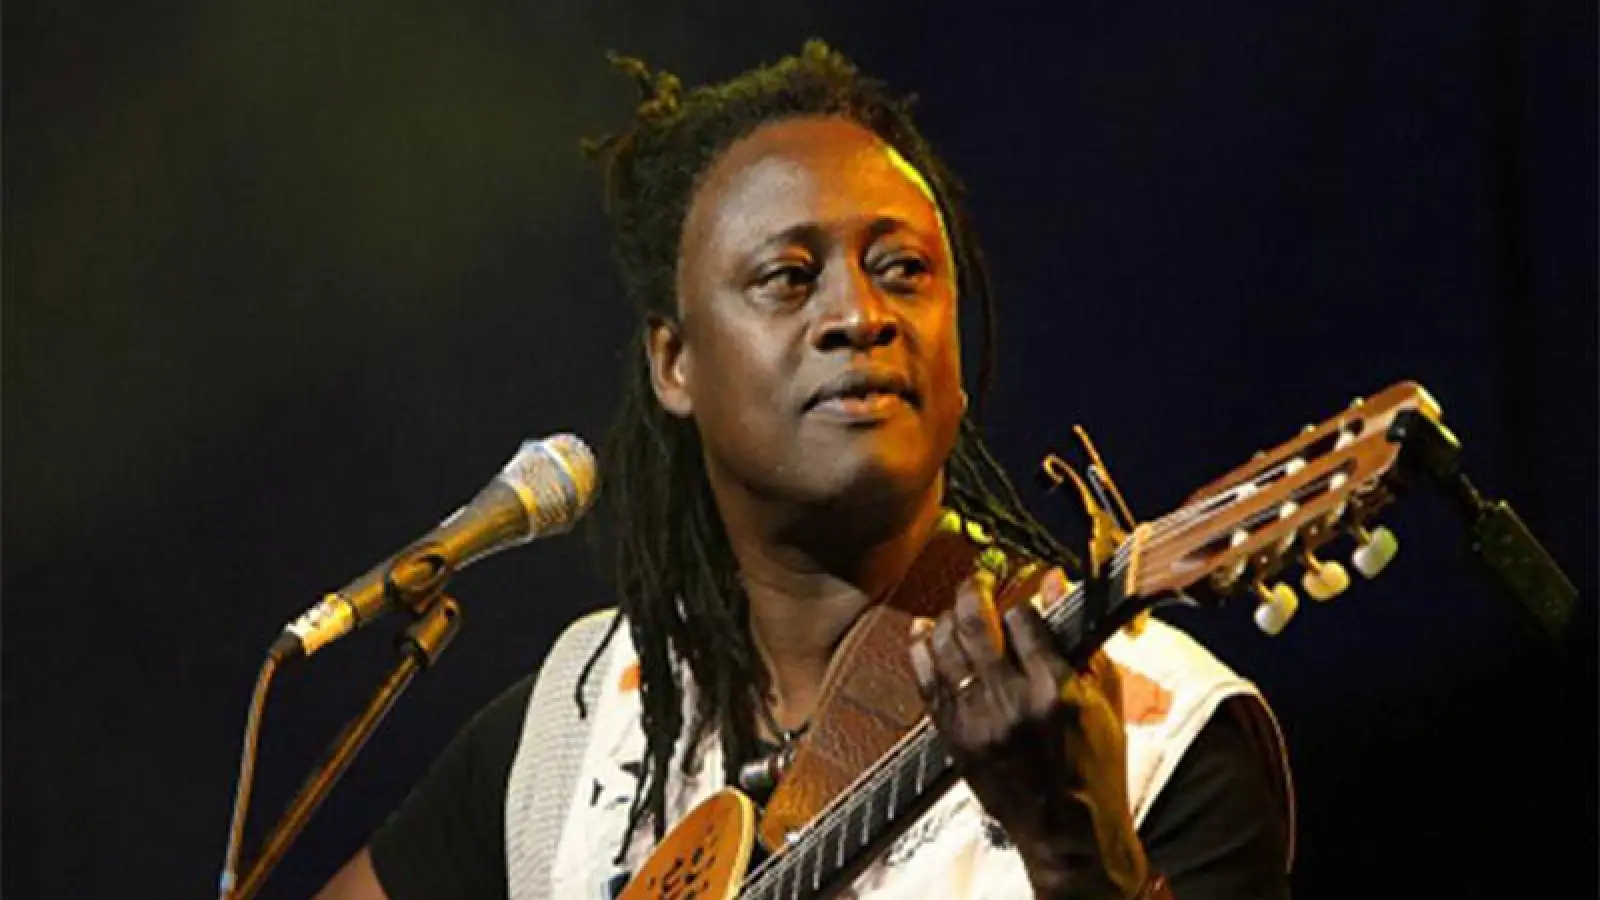 Einer der großen Stars der afrikanischen Weltmusik zu Besuch (Foto: red)